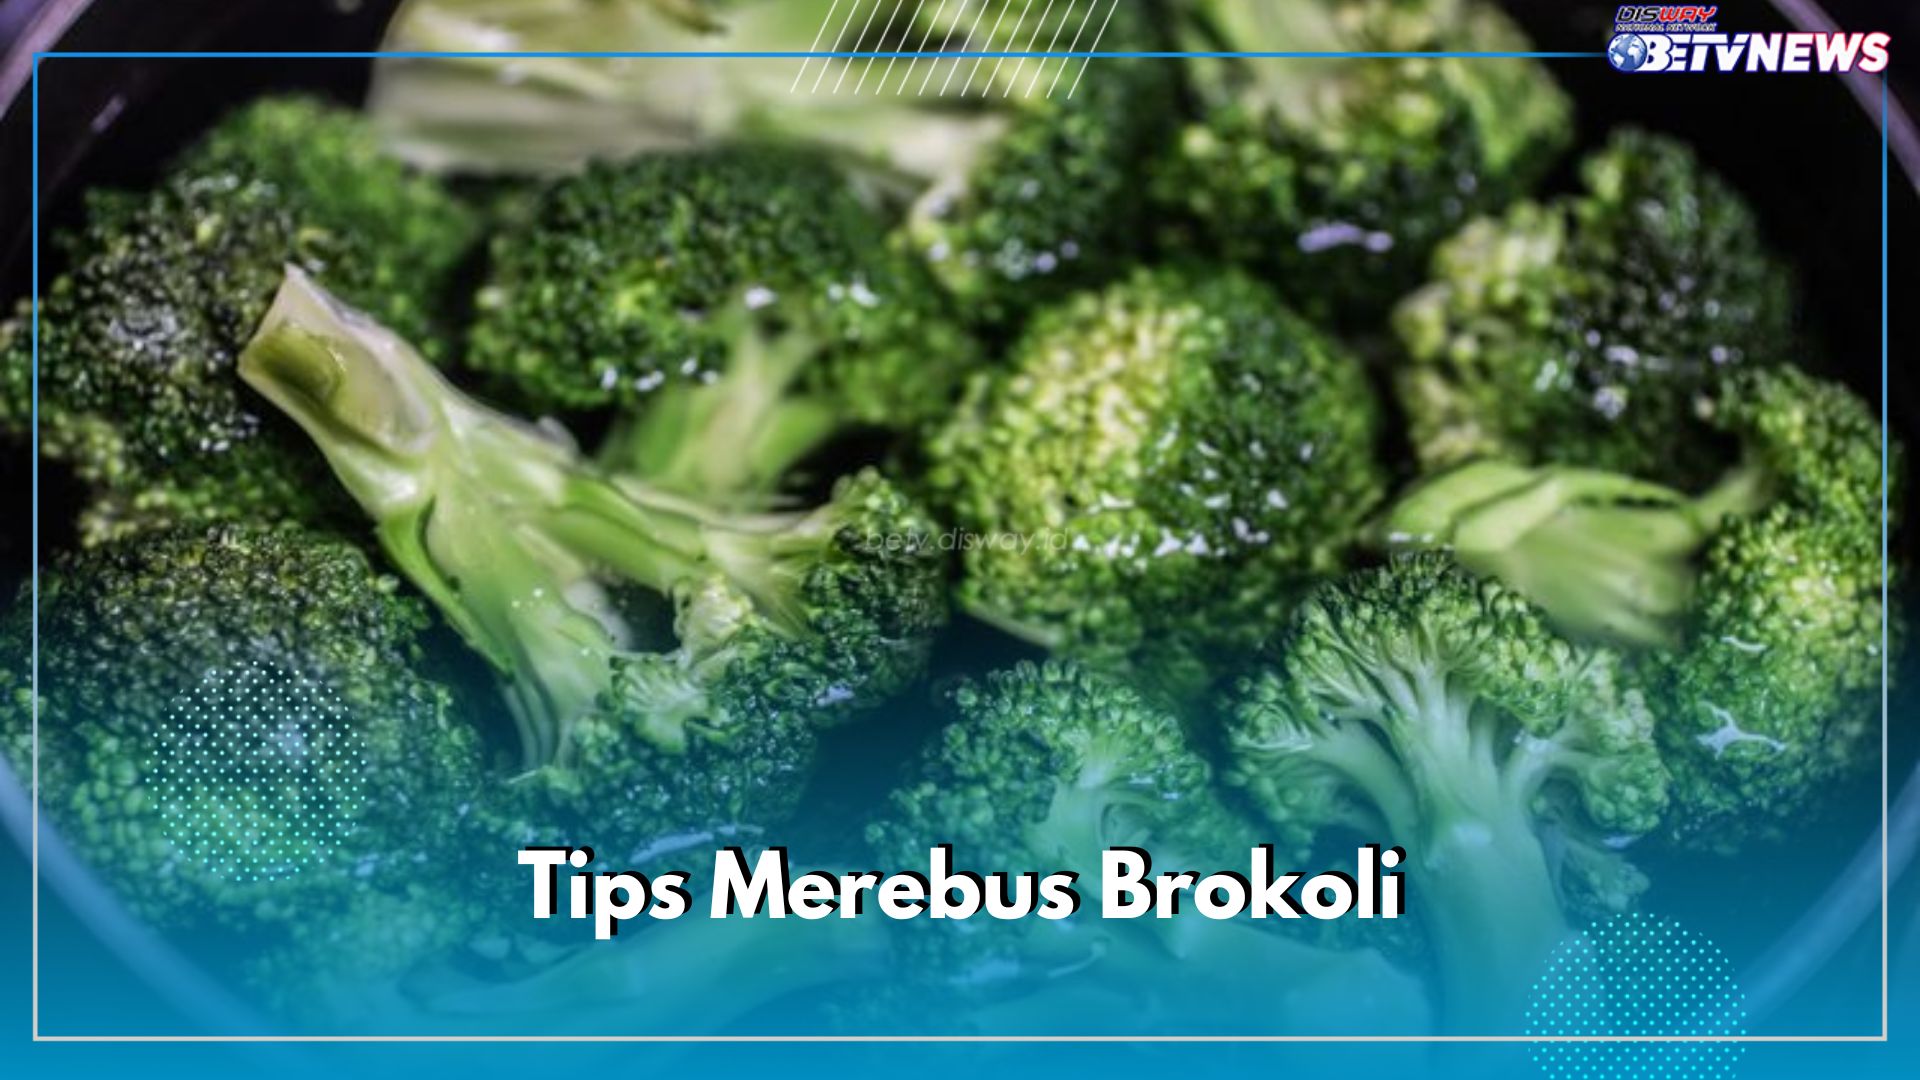 Inilah 5 Tips Merebus Brokoli yang Baik dan Benar, Dijamin Tetap Hijau, Segar dan Tidak Gampang Layu